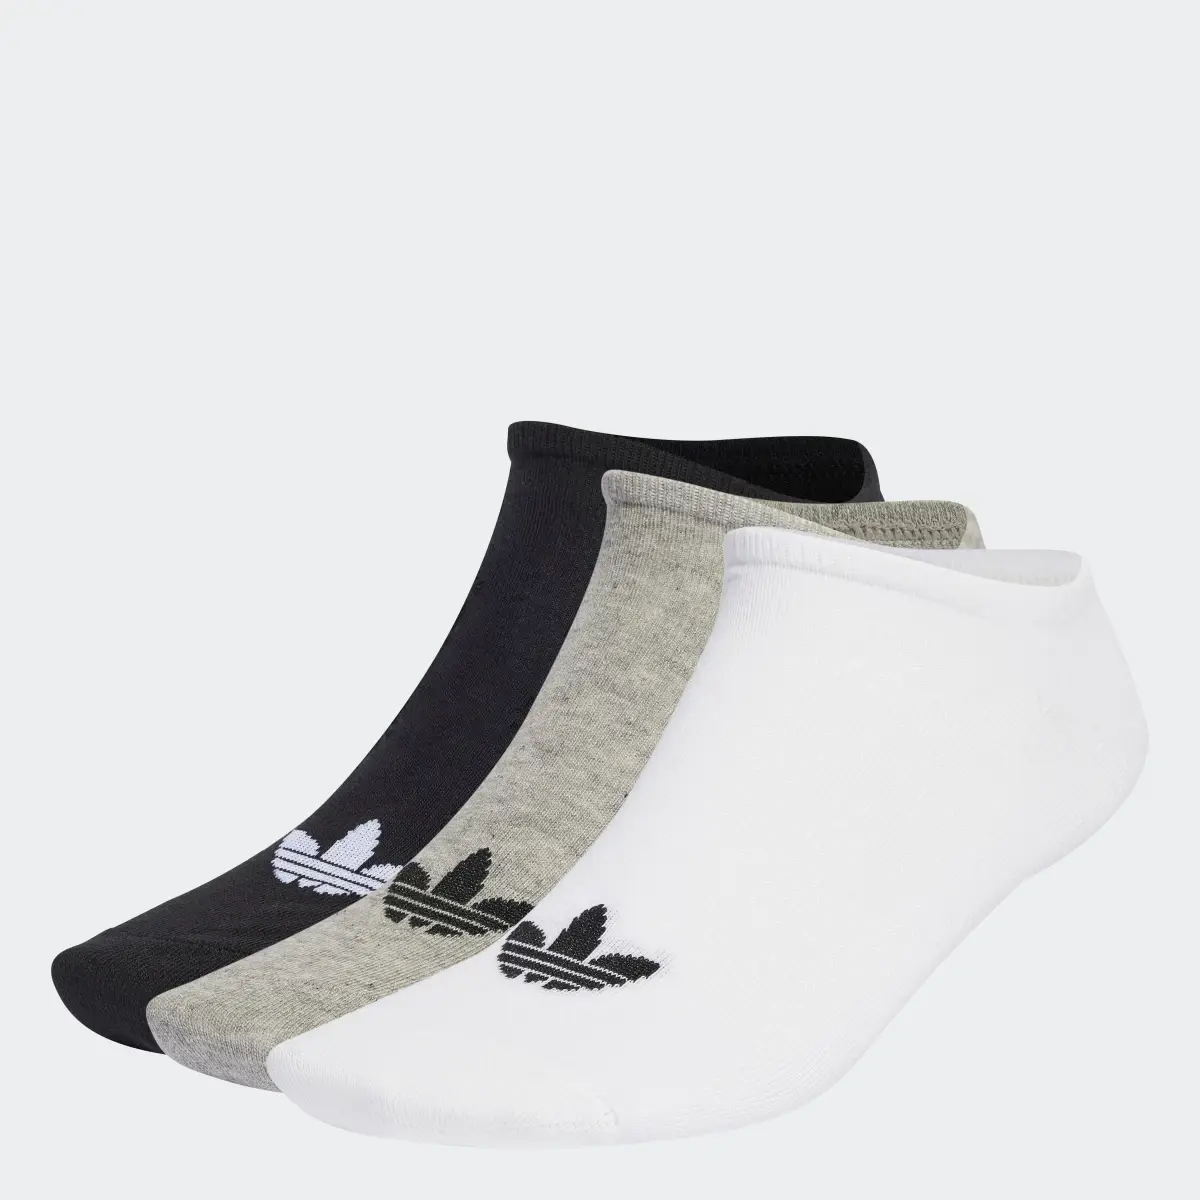 Adidas Trefoil Liner Socken, 6 Paar. 1